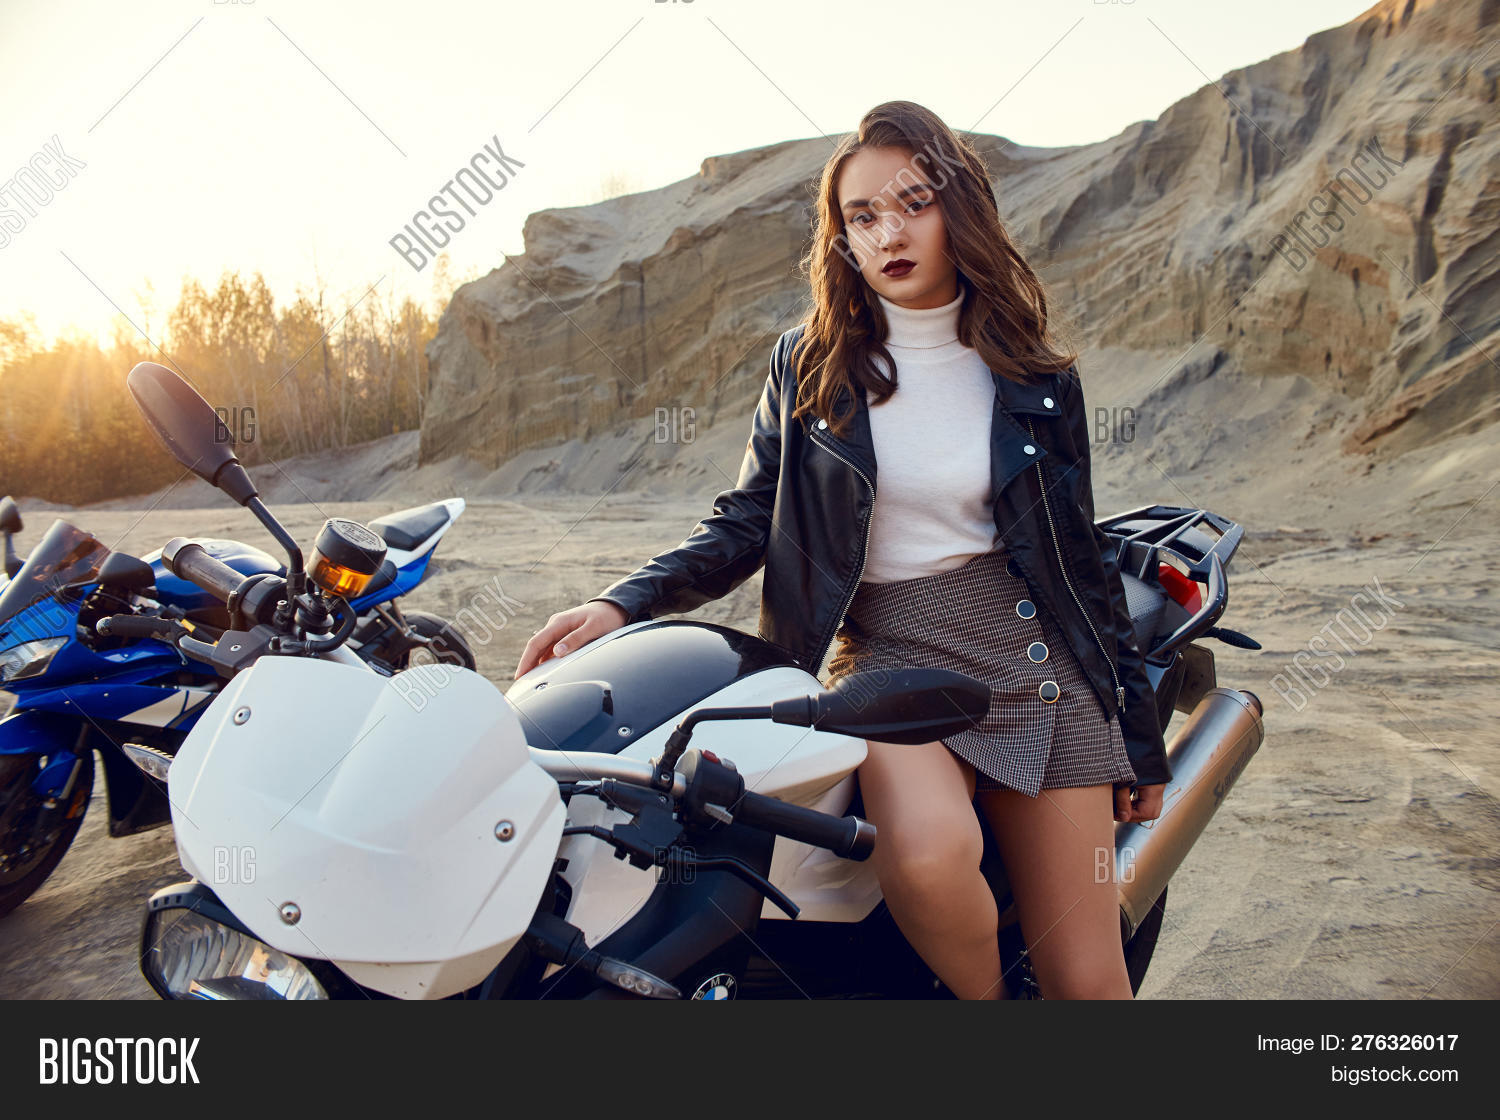 Teen girl on motorcycle